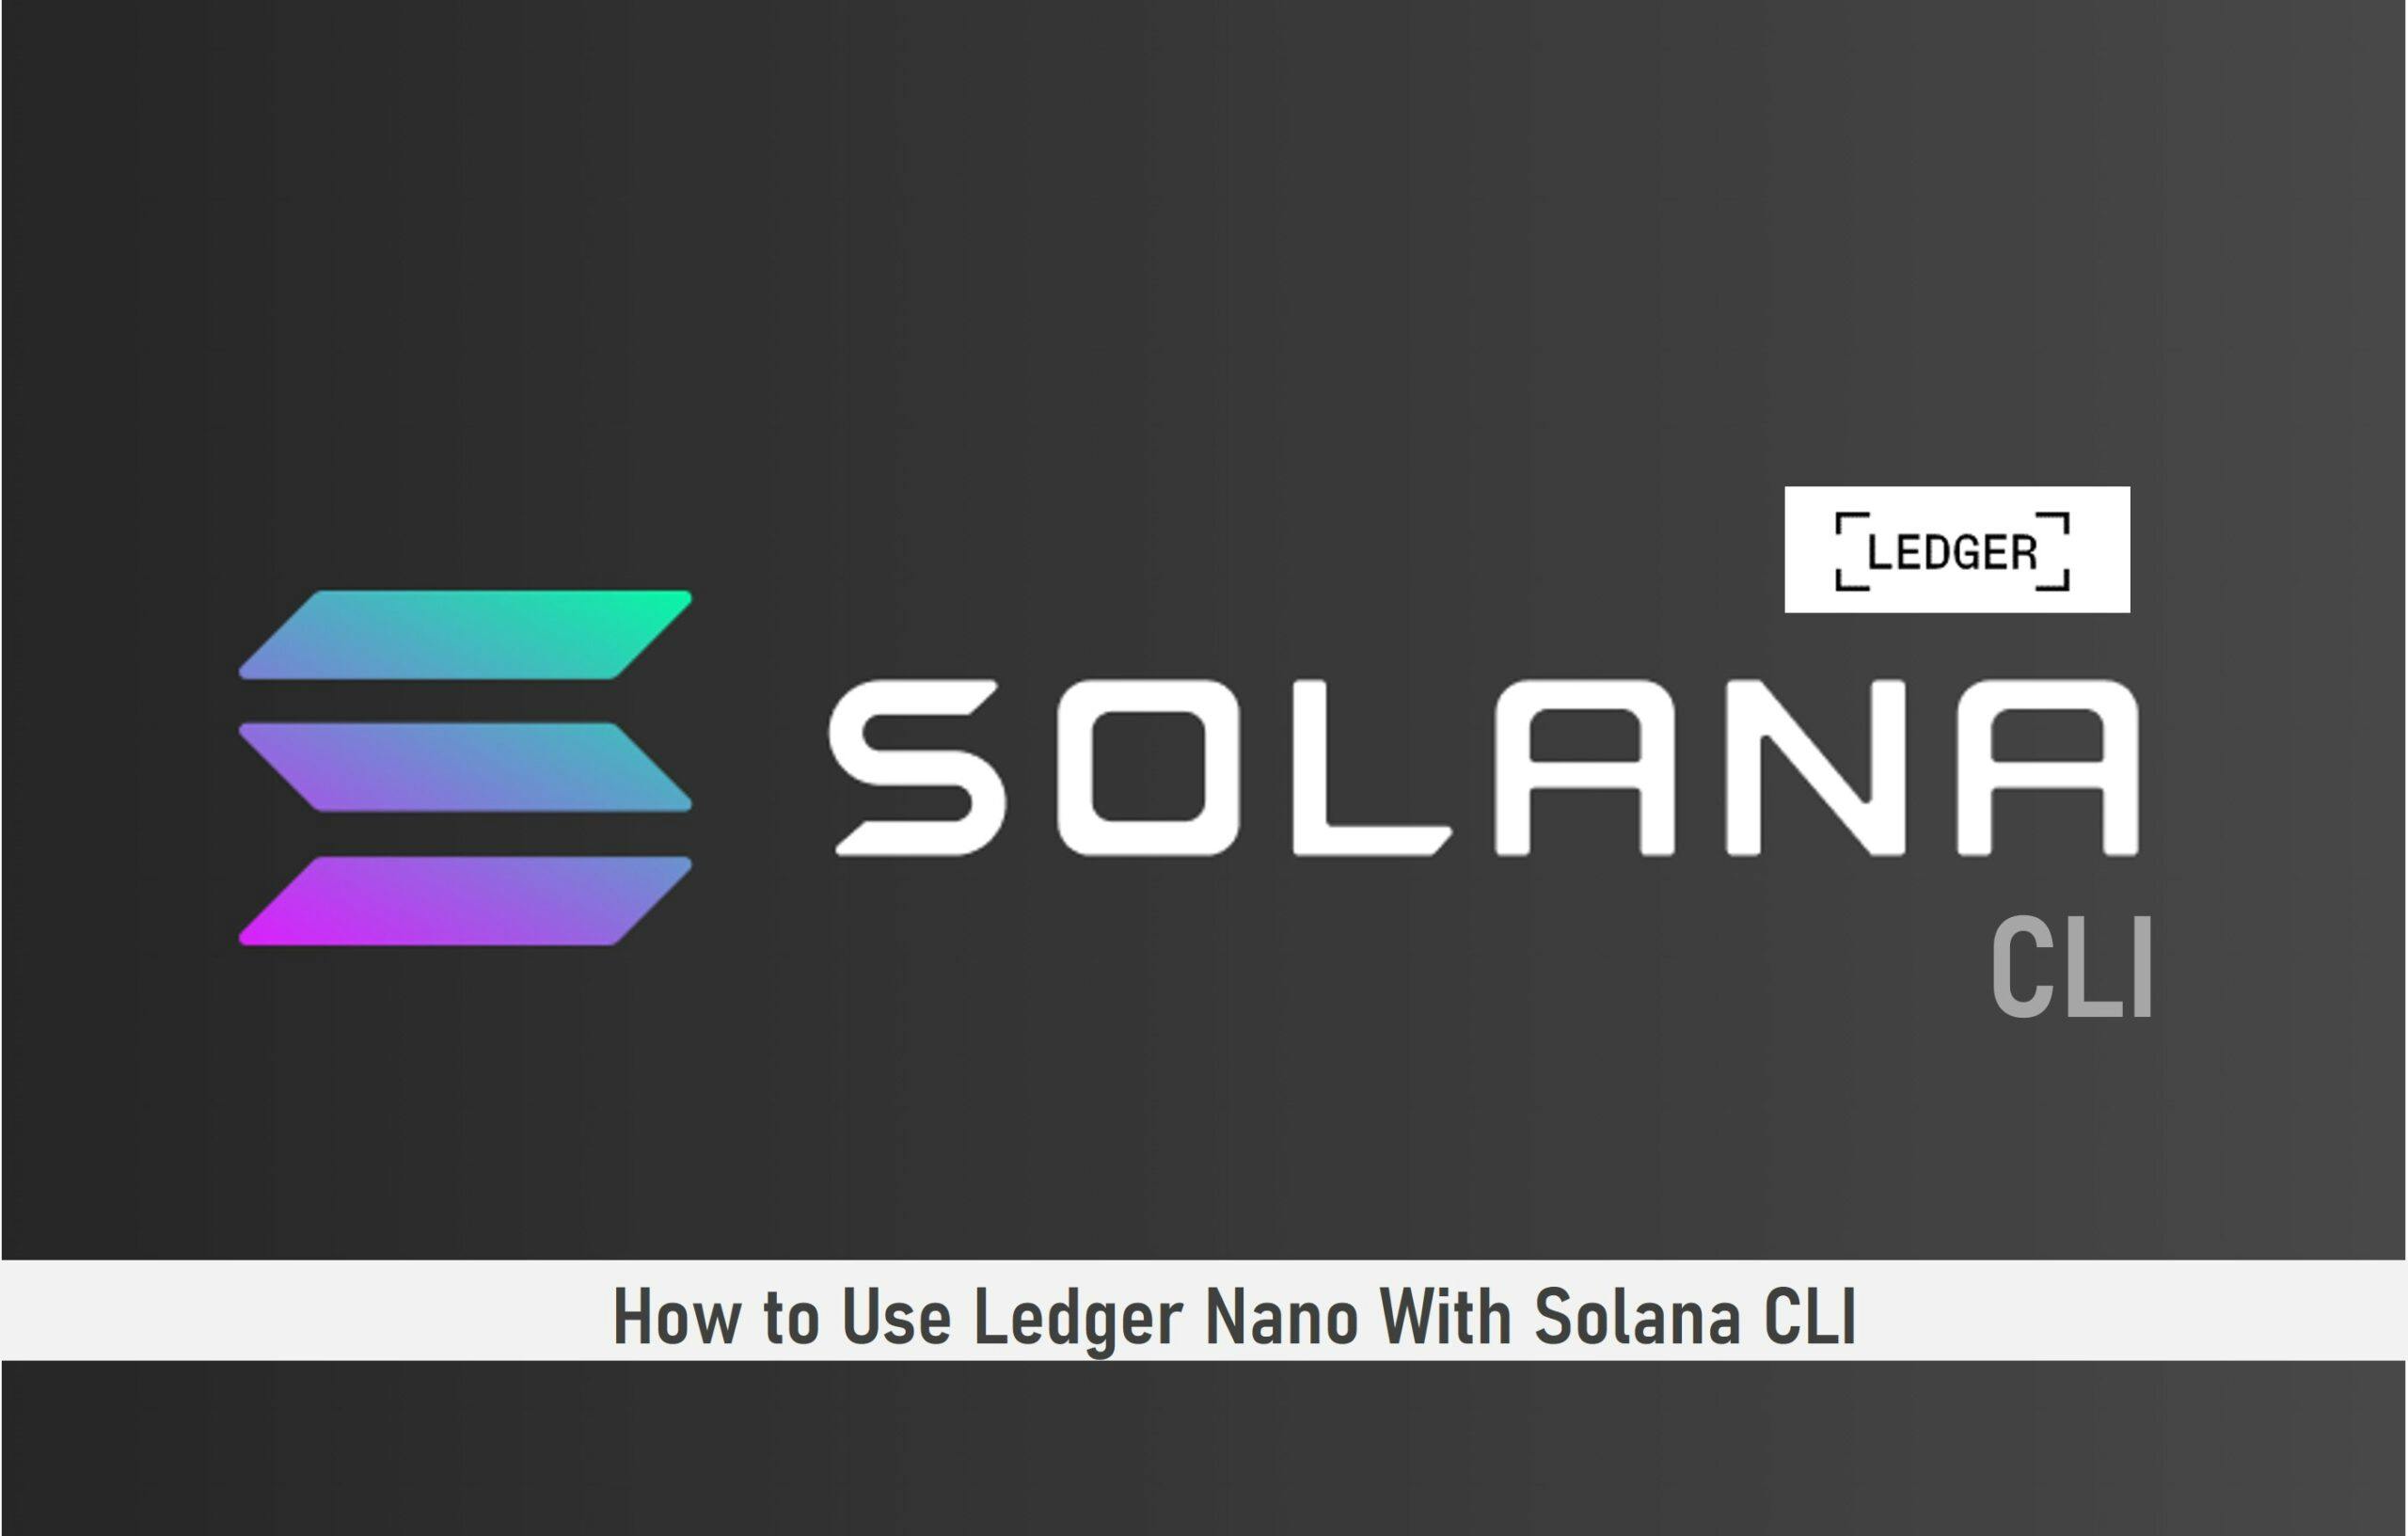 How to Use Ledger Nano With Solana CLI